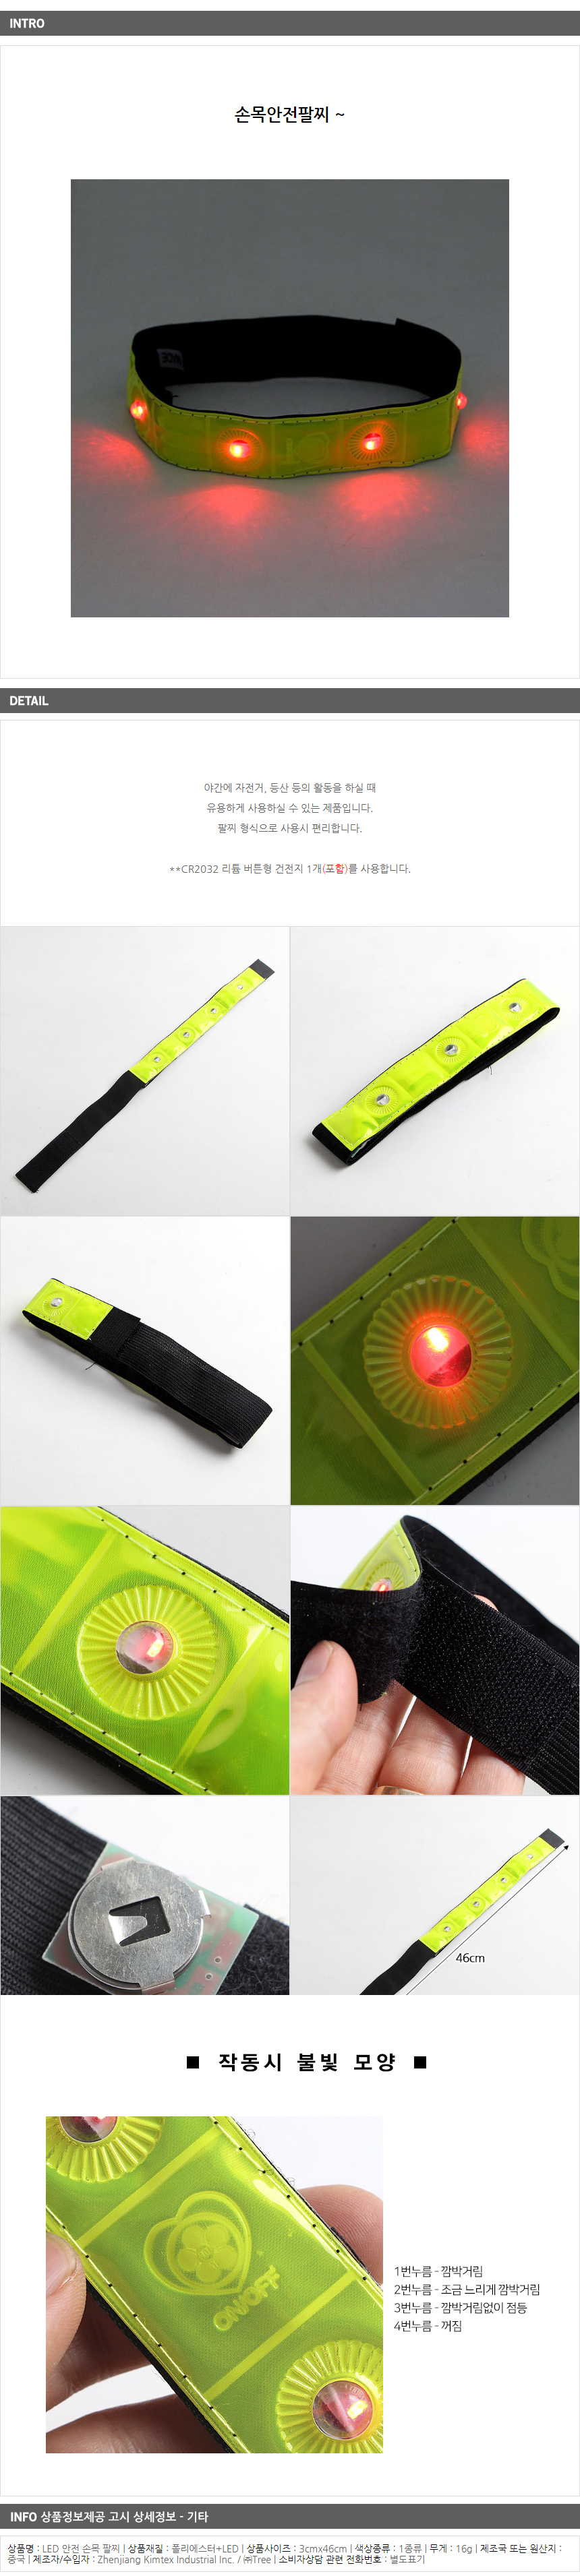 LED 안전 손목 팔찌/잡화점판매용 바이크판매용